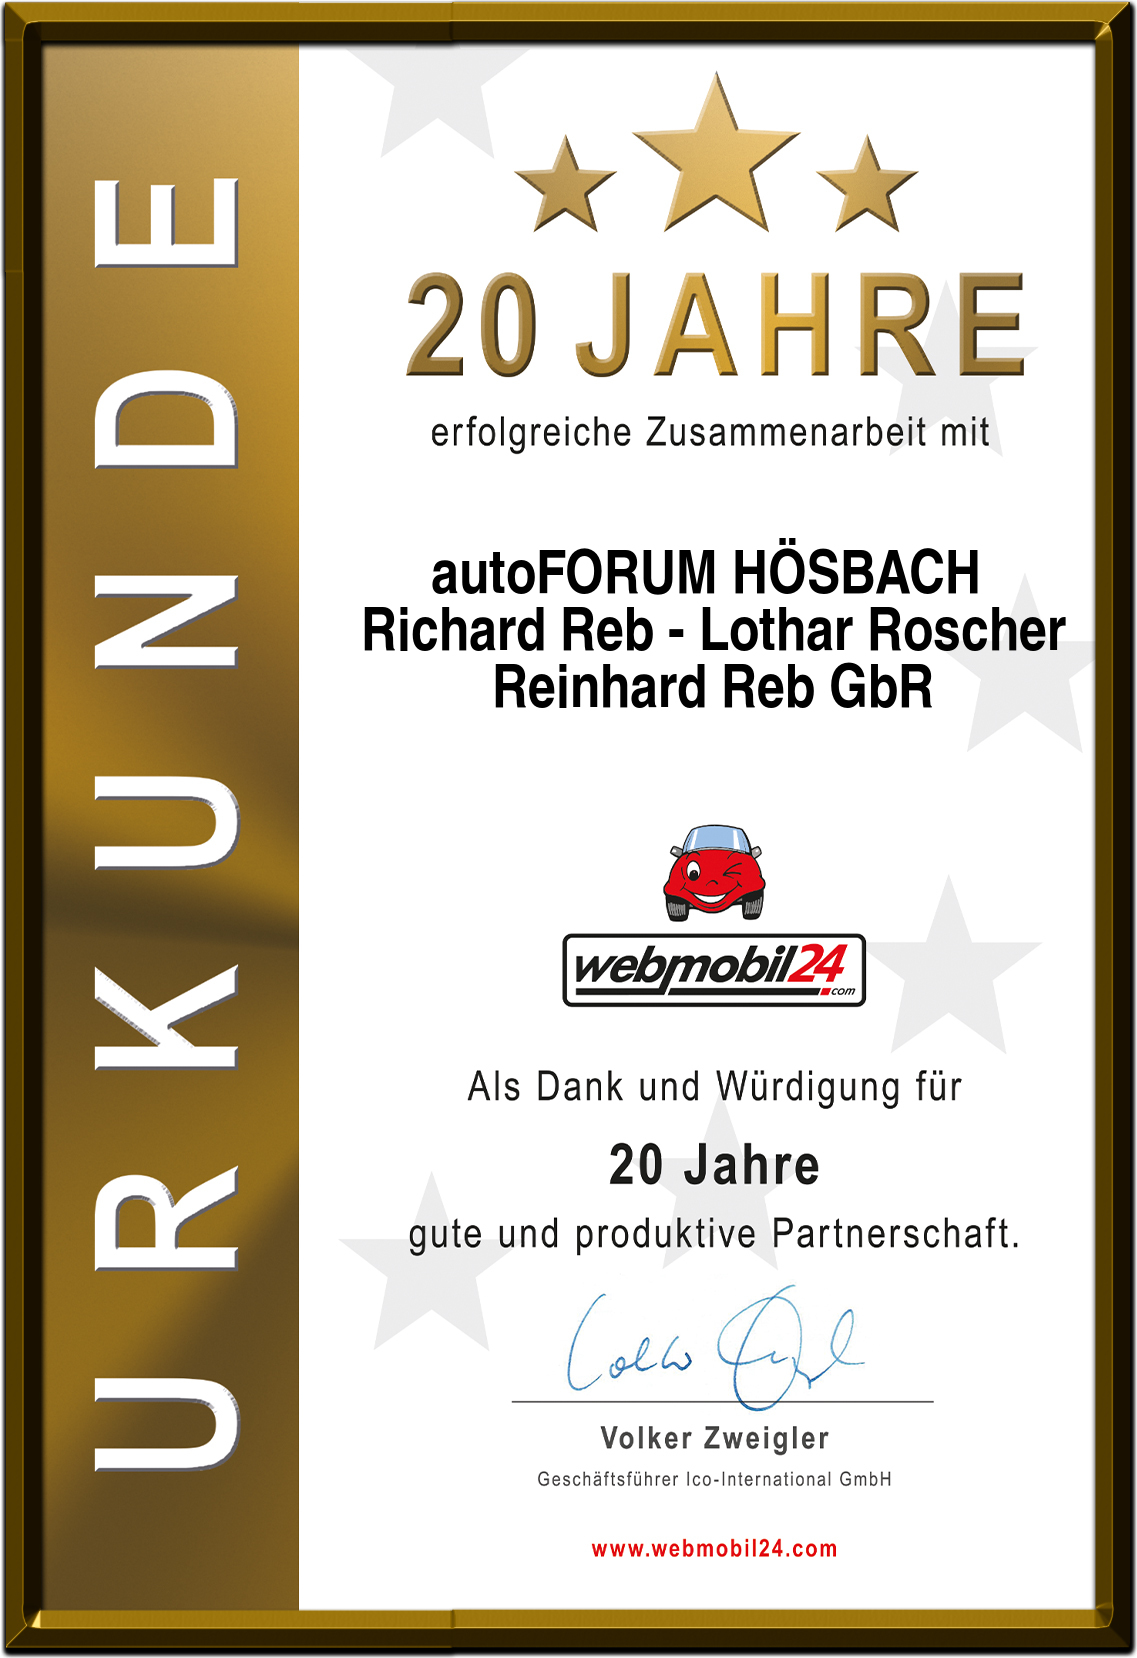 autoFORUM HÖSBACH Richard Reb - Lothar RoscherReinhard Reb GbR